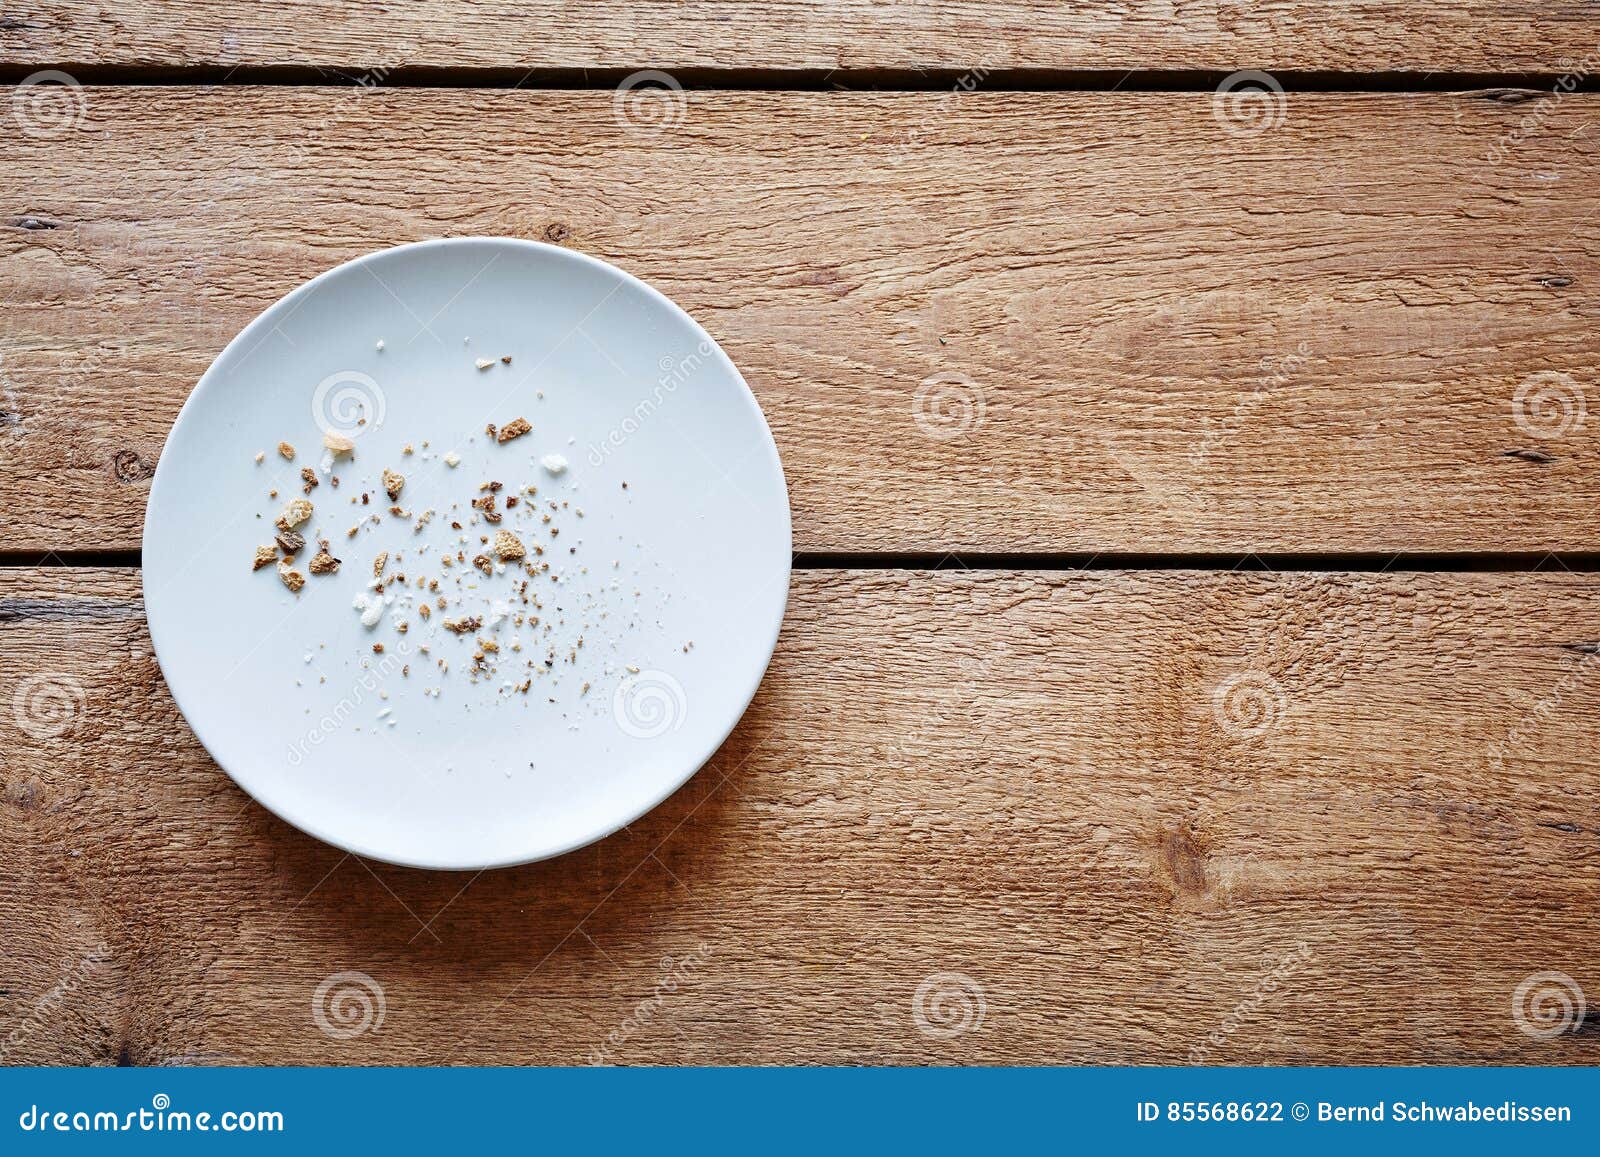 breadcrumbs on empty plate